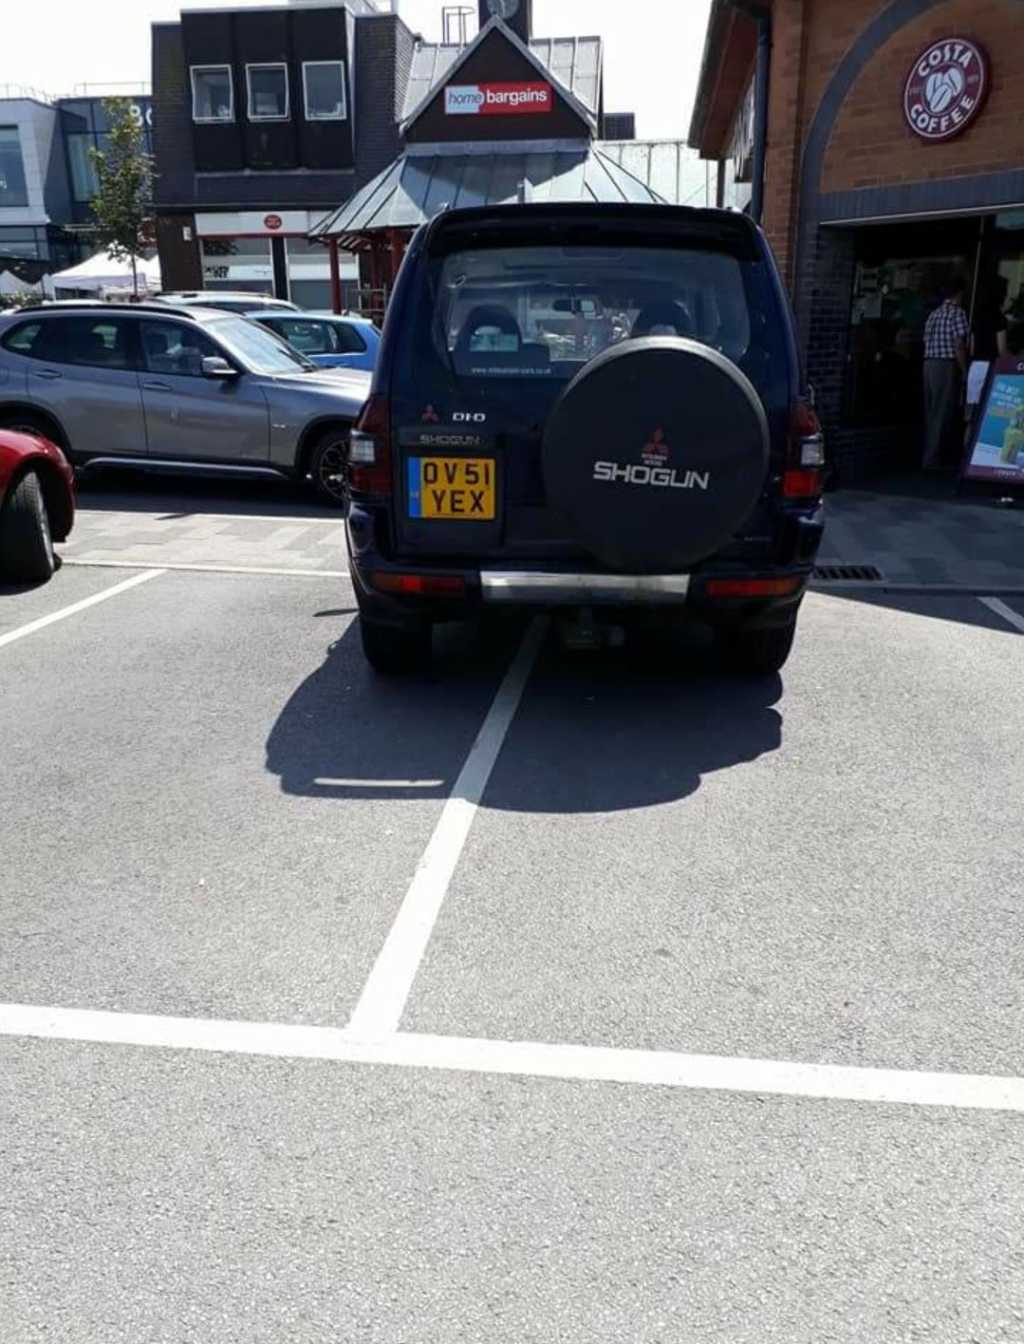 DV51 YEX displaying Selfish Parking